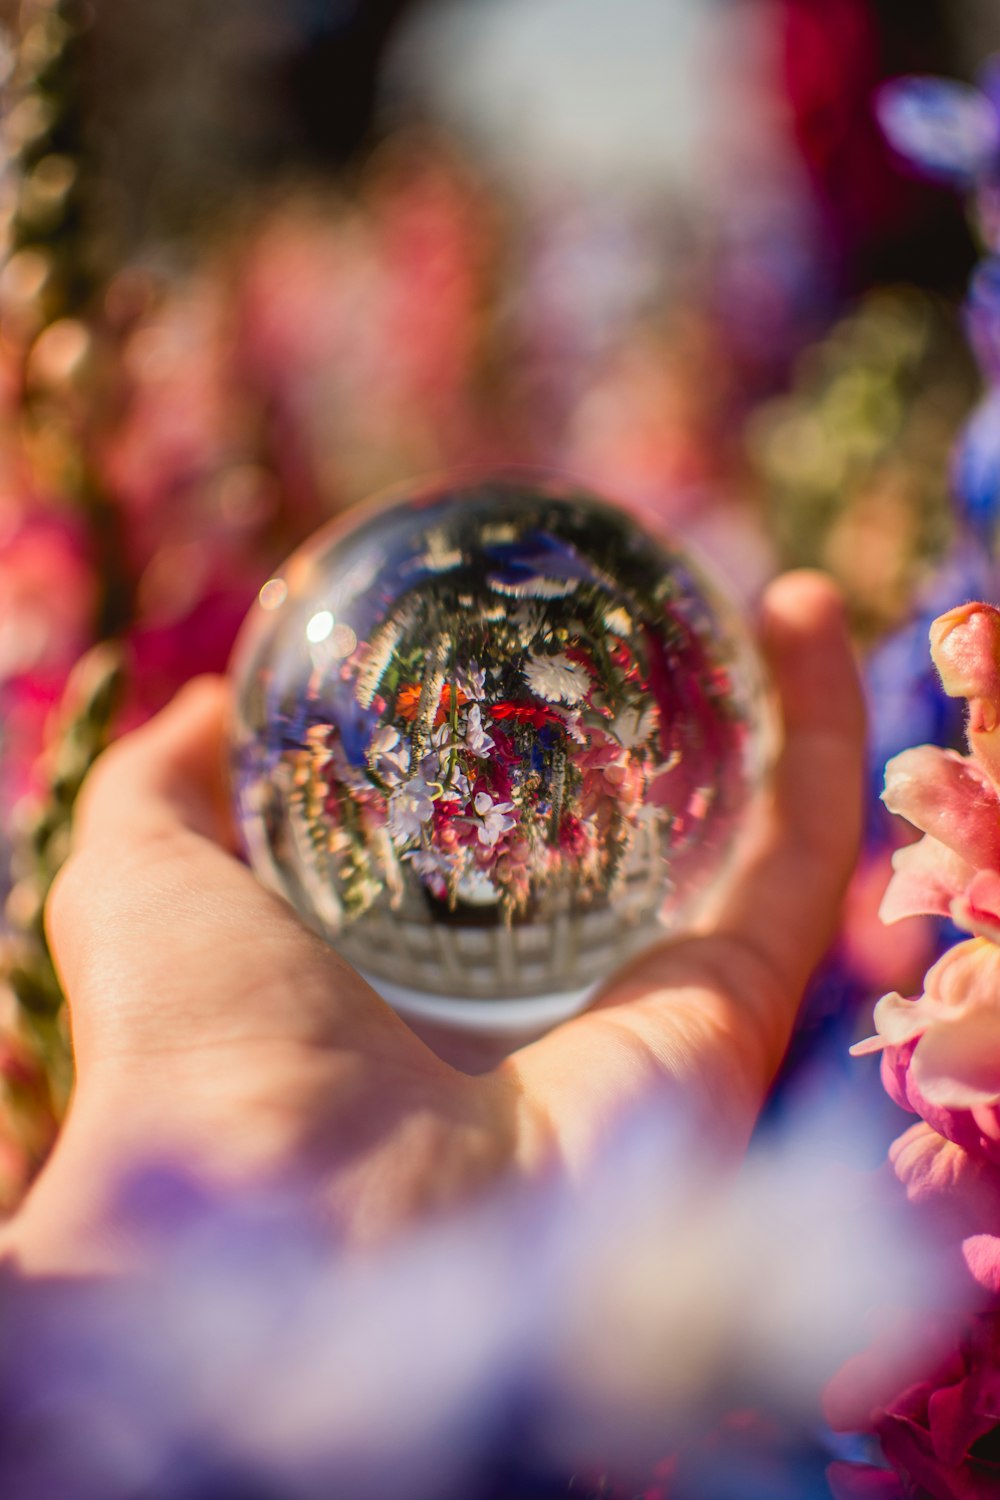 手元の透明なガラスの球体に映る花の盛り合わせ